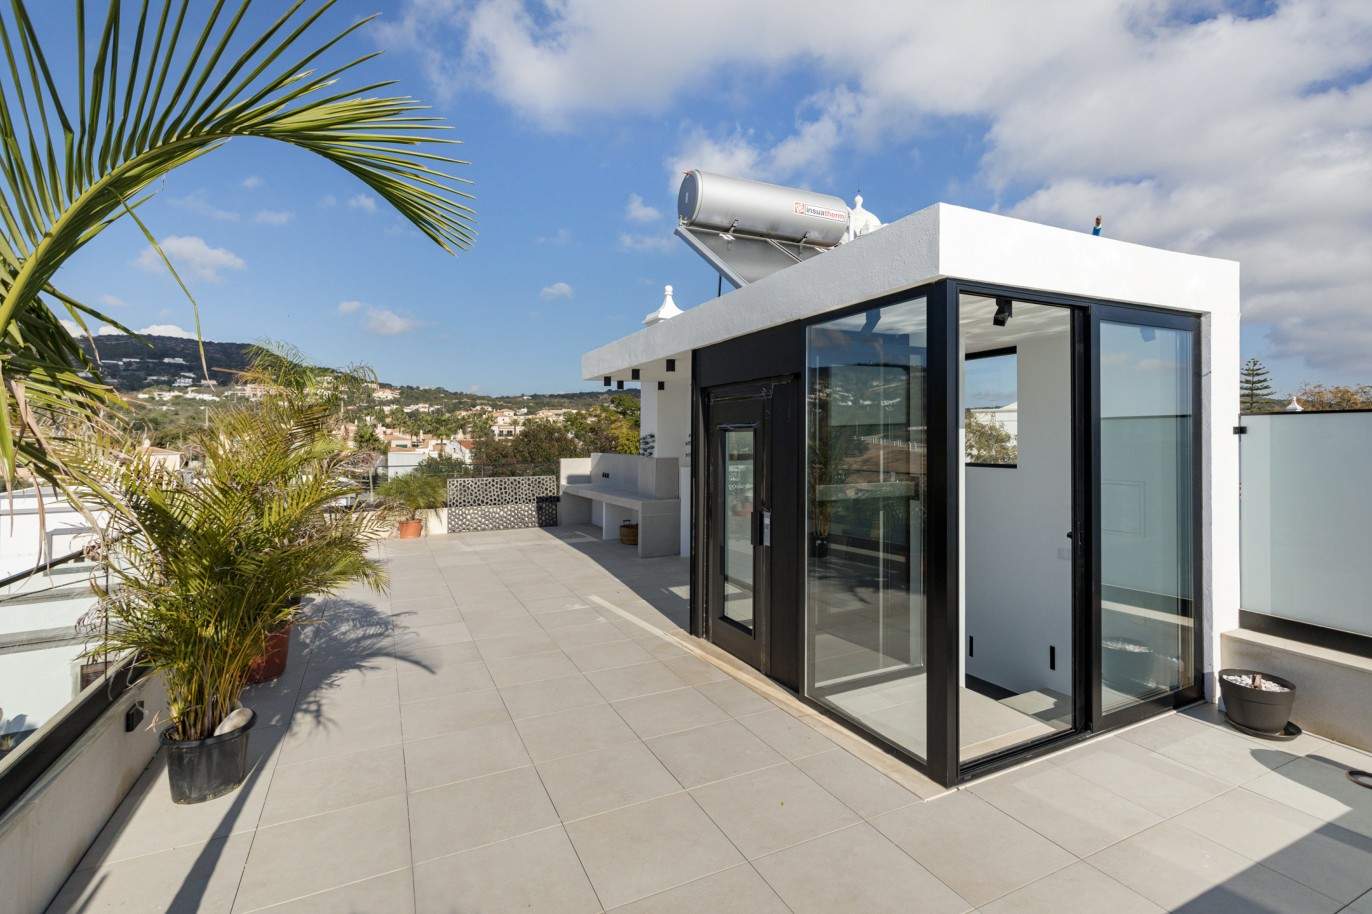 Villa de 3 dormitorios, con piscina, en venta en Santa Barbara de Nexe, Algarve_213421